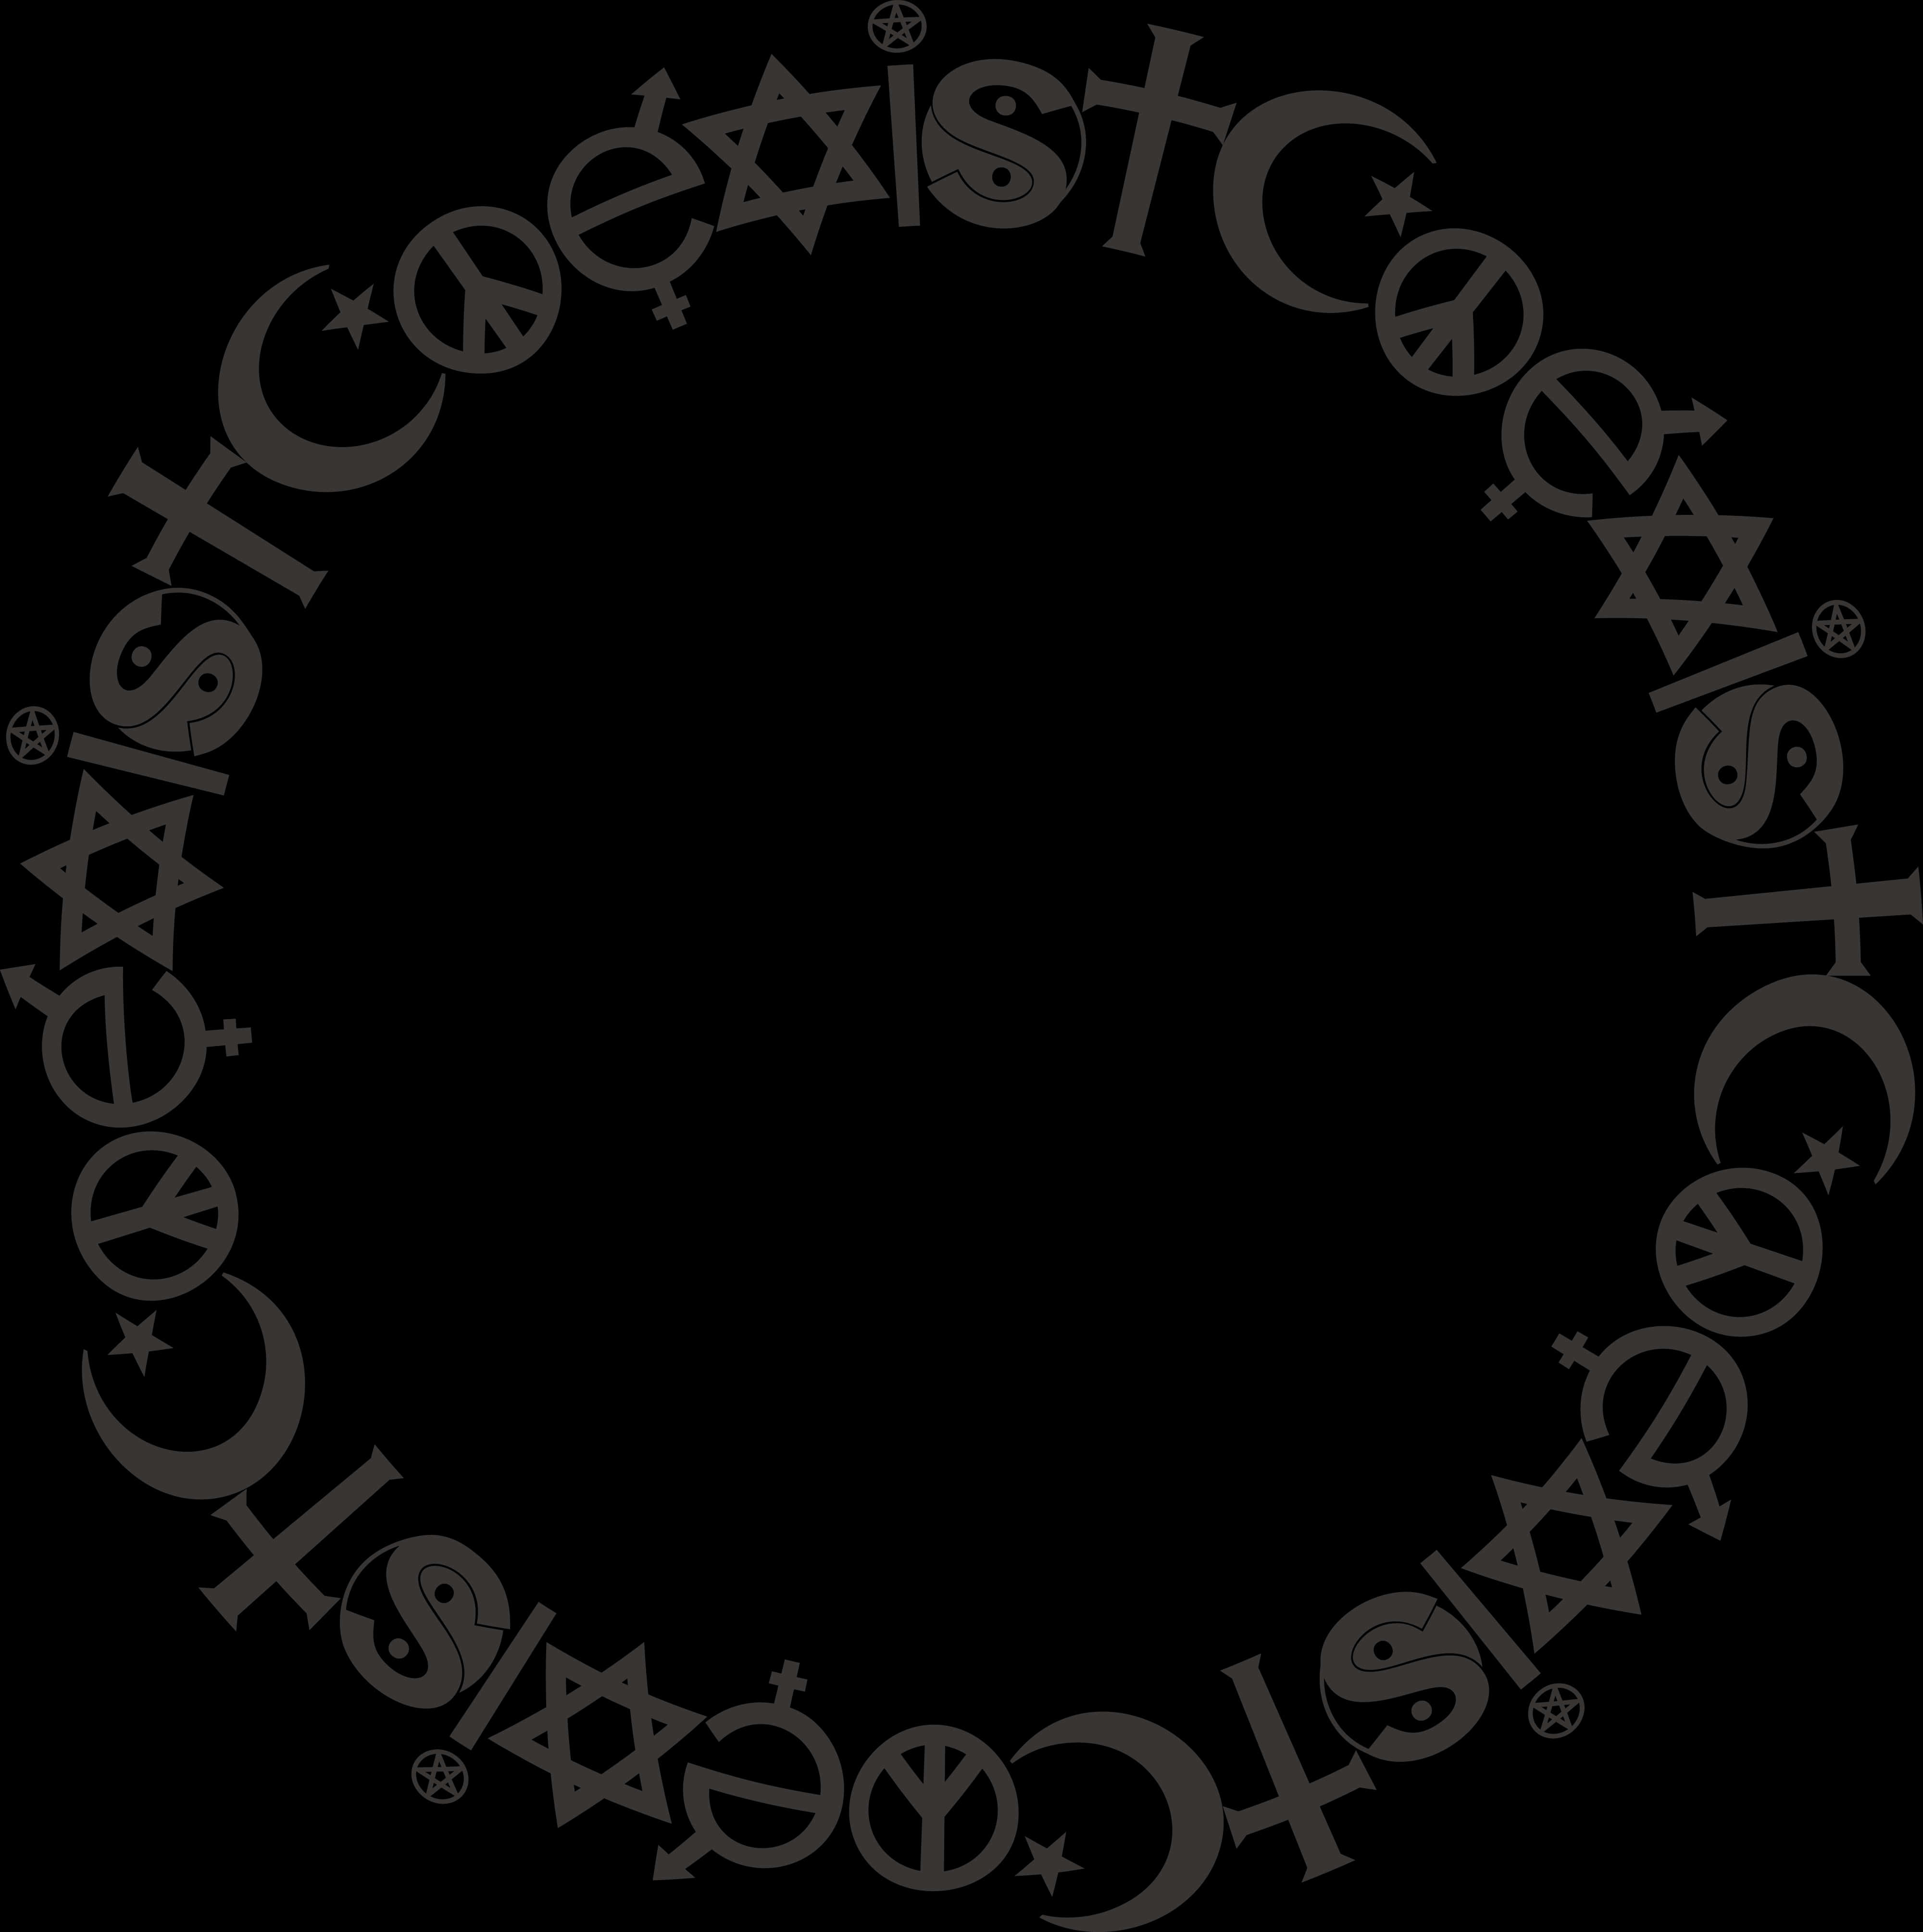 Coexist Symbols Round Frame